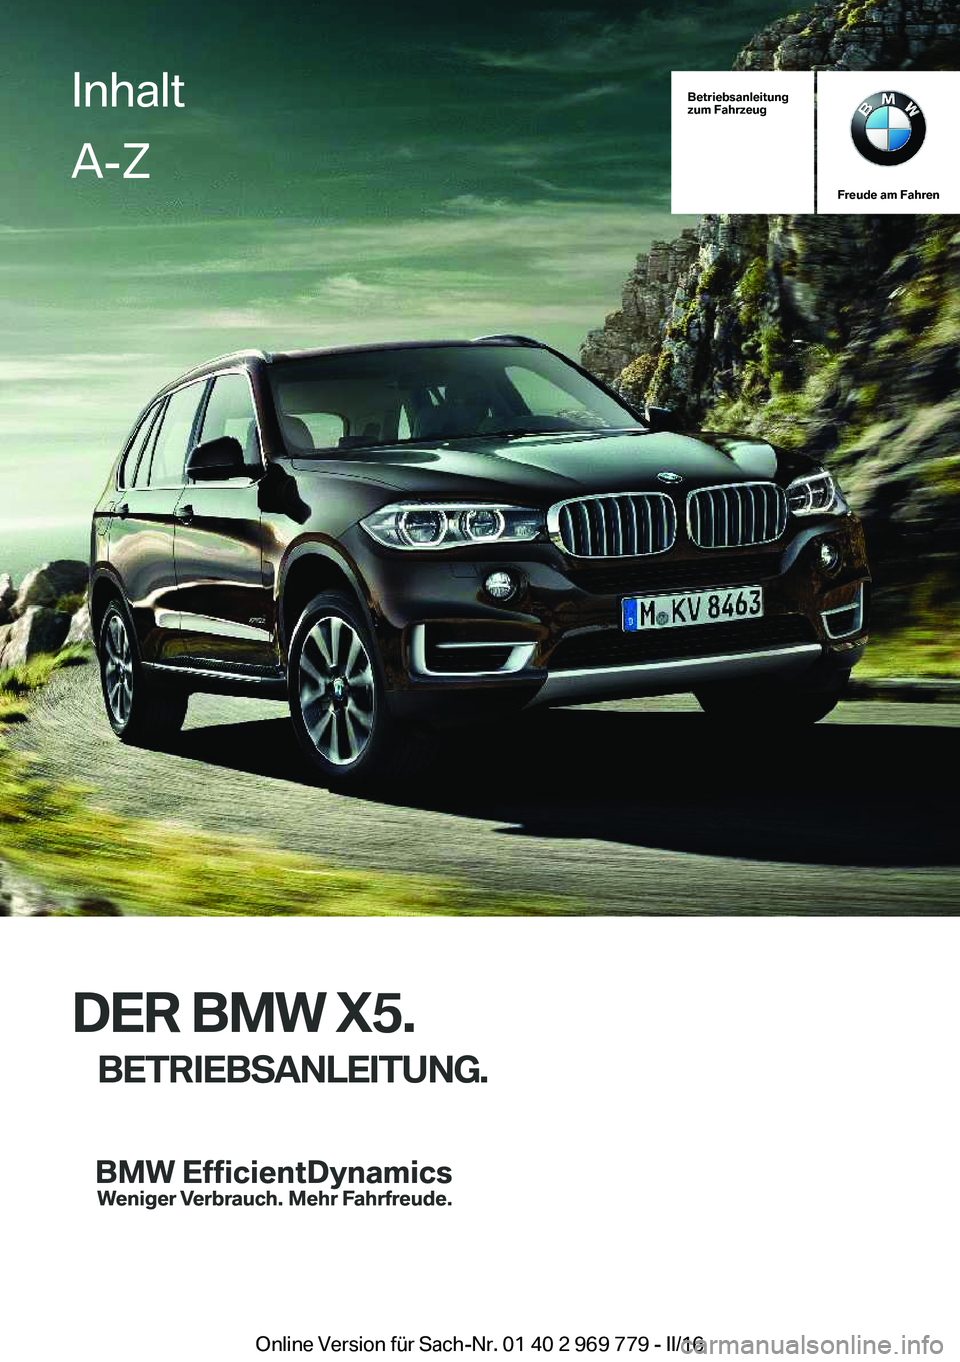 BMW X5 2016  Betriebsanleitungen (in German) Betriebsanleitung
zum Fahrzeug
Freude am Fahren
DER BMW X5.
BETRIEBSANLEITUNG.
InhaltA-Z
Online Version für Sach-Nr. 01 40 2 969 779 - II/16   